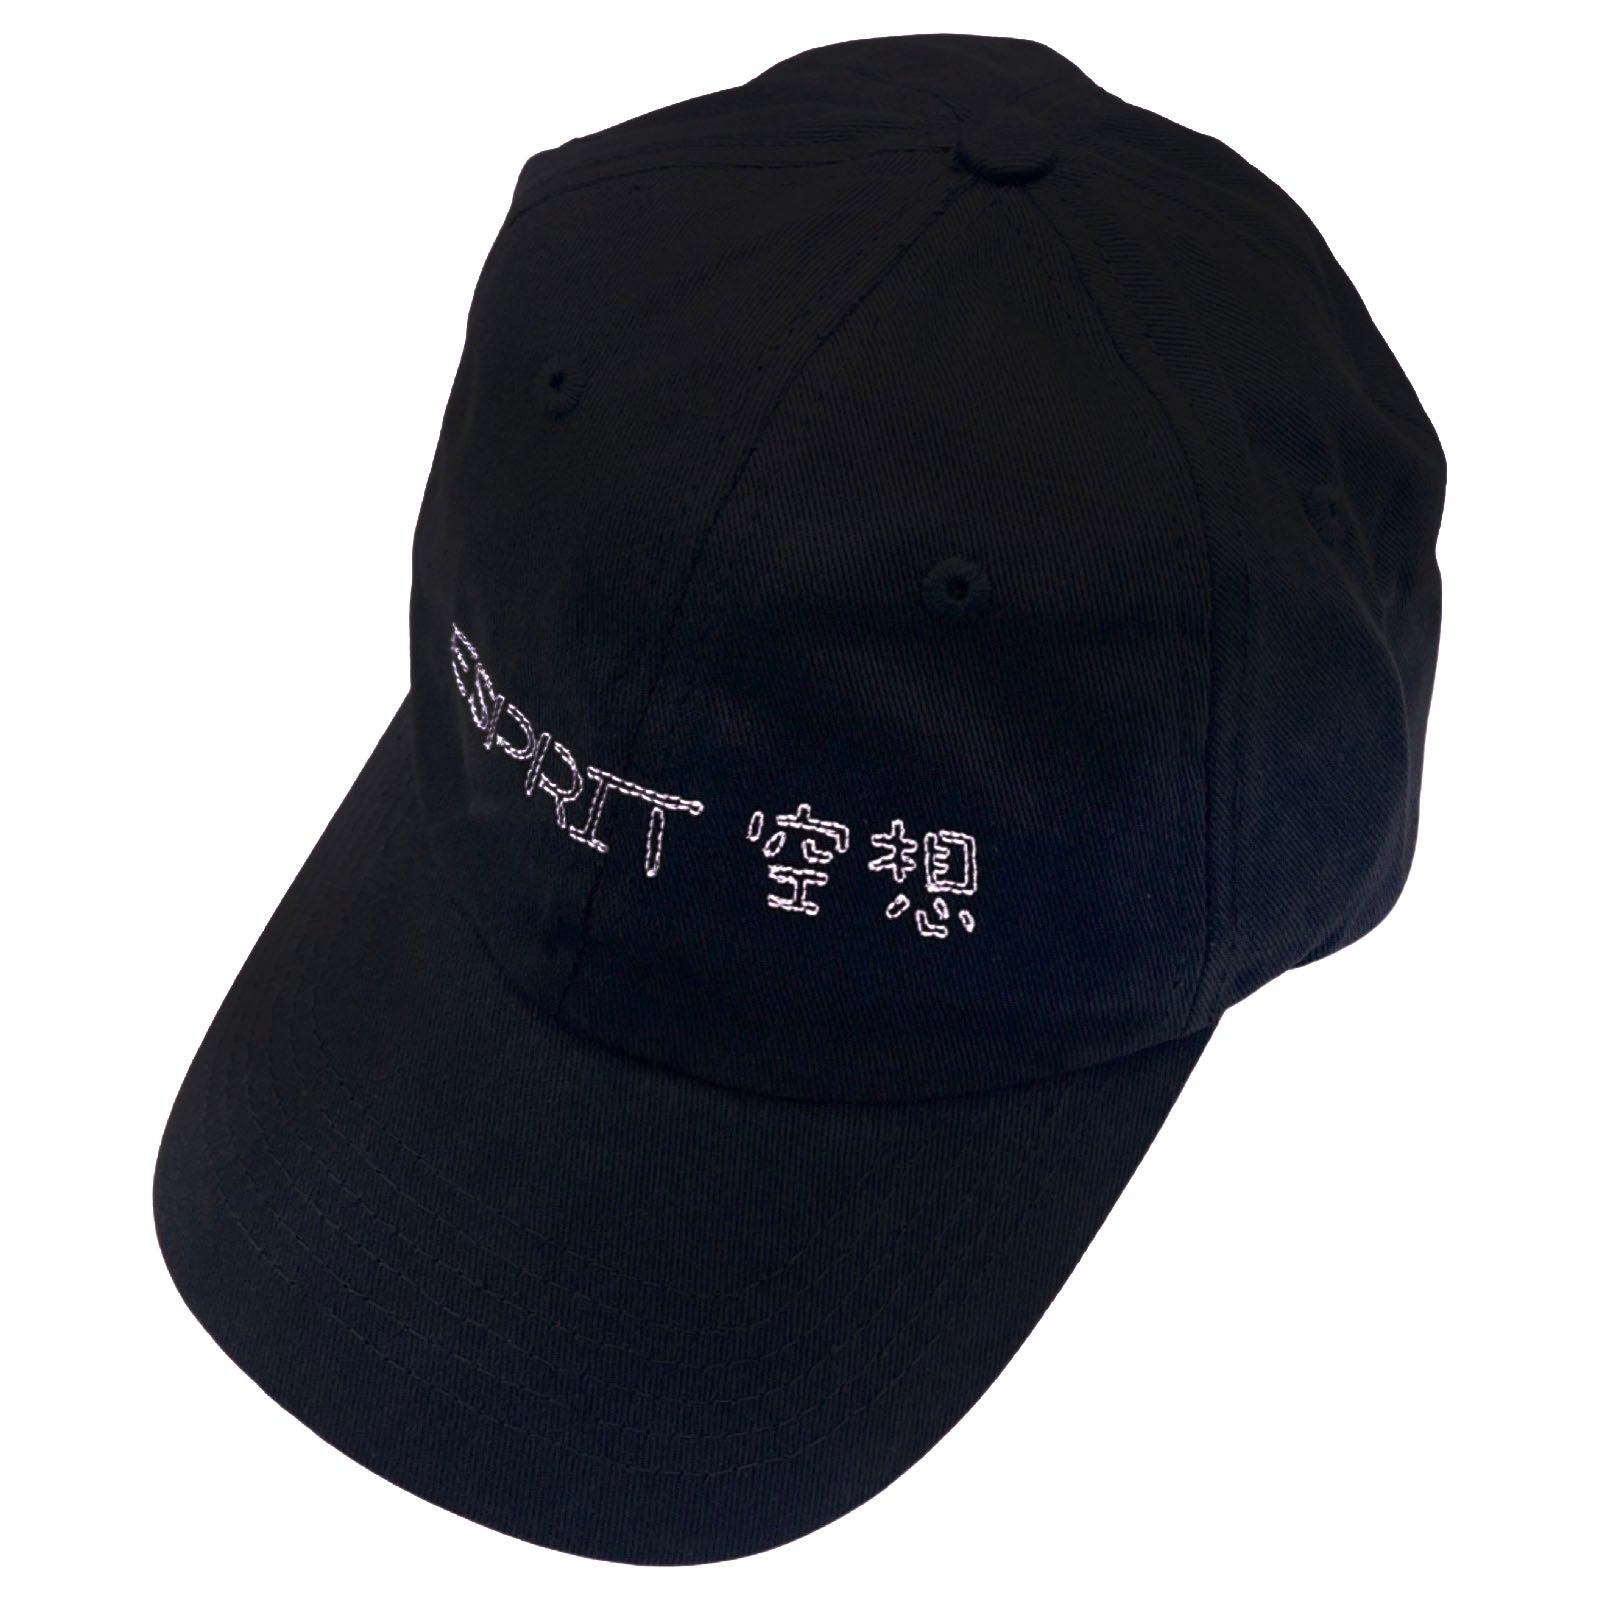 ESPRIT 空想 - ESPRIT 空想 Cap (Black) - 100% Electronica Official Store (Photo 1)